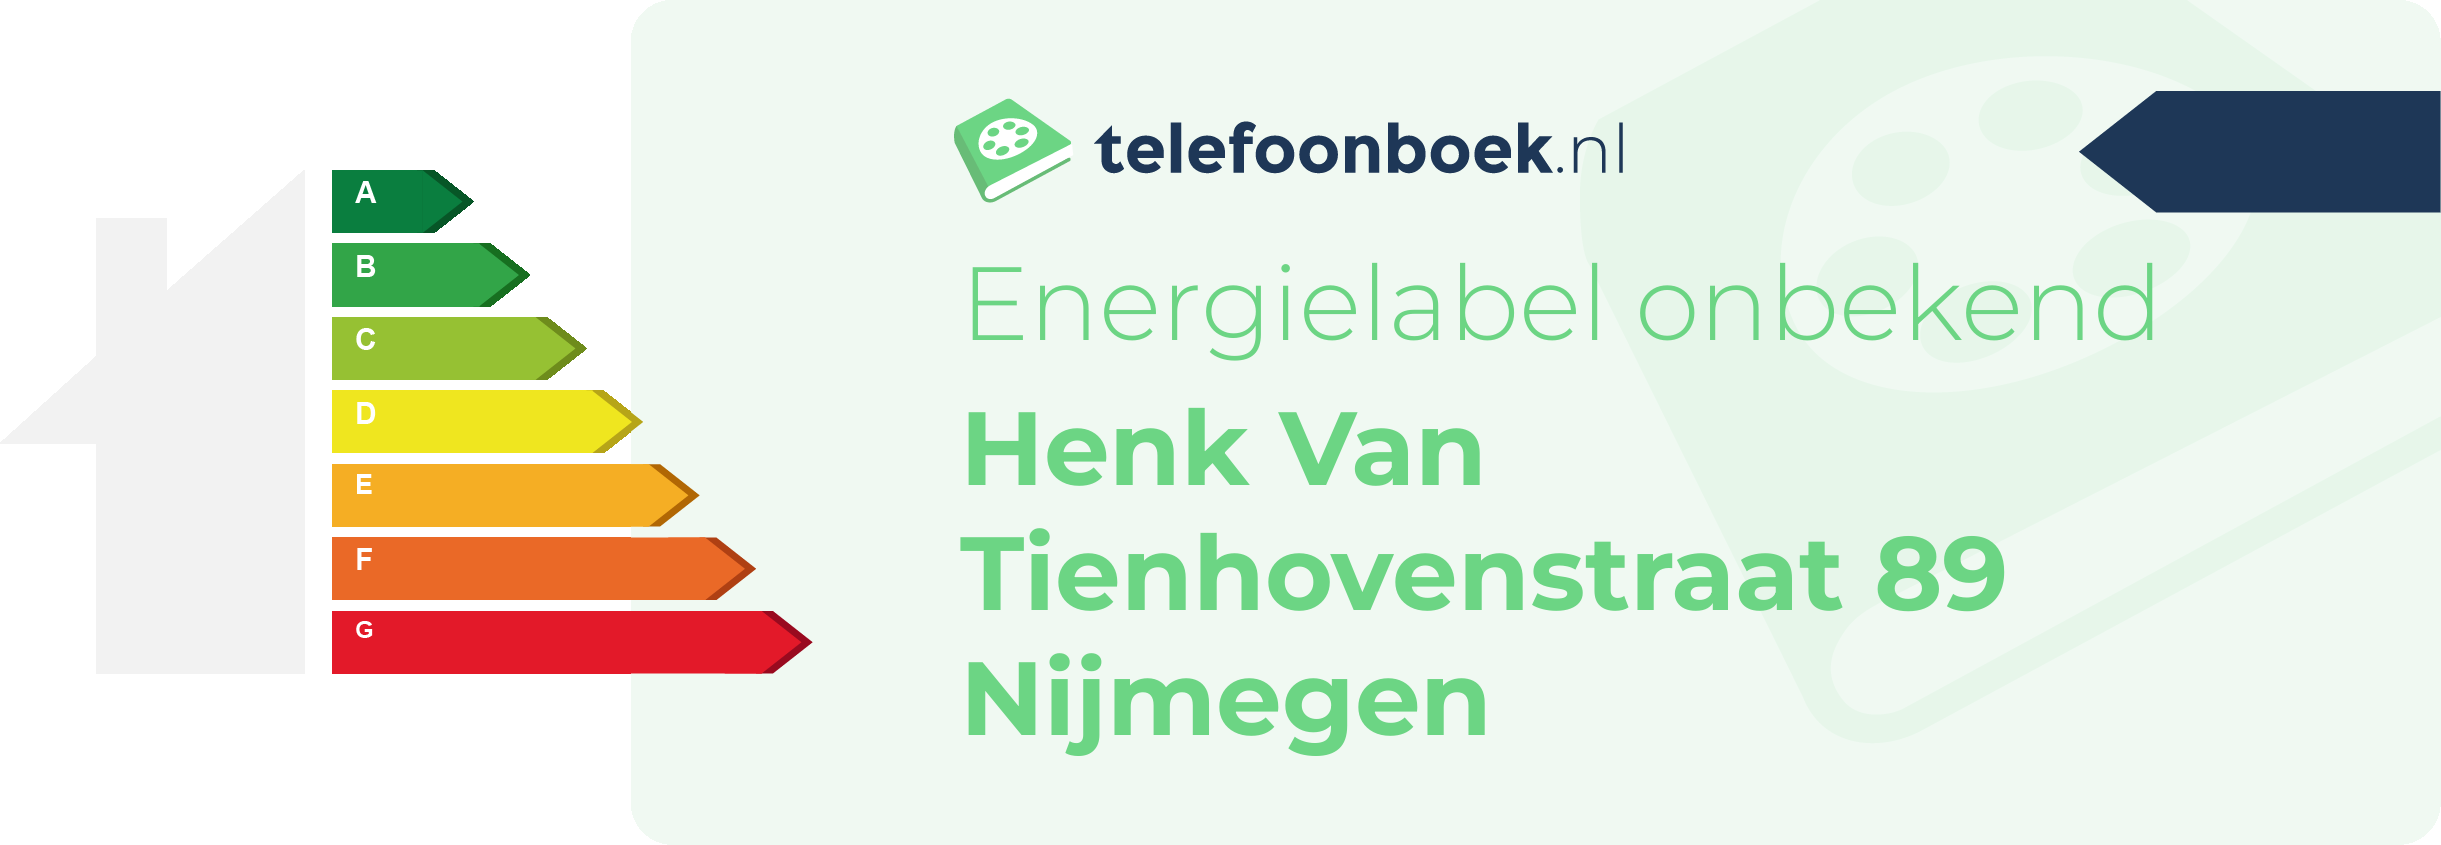 Energielabel Henk Van Tienhovenstraat 89 Nijmegen